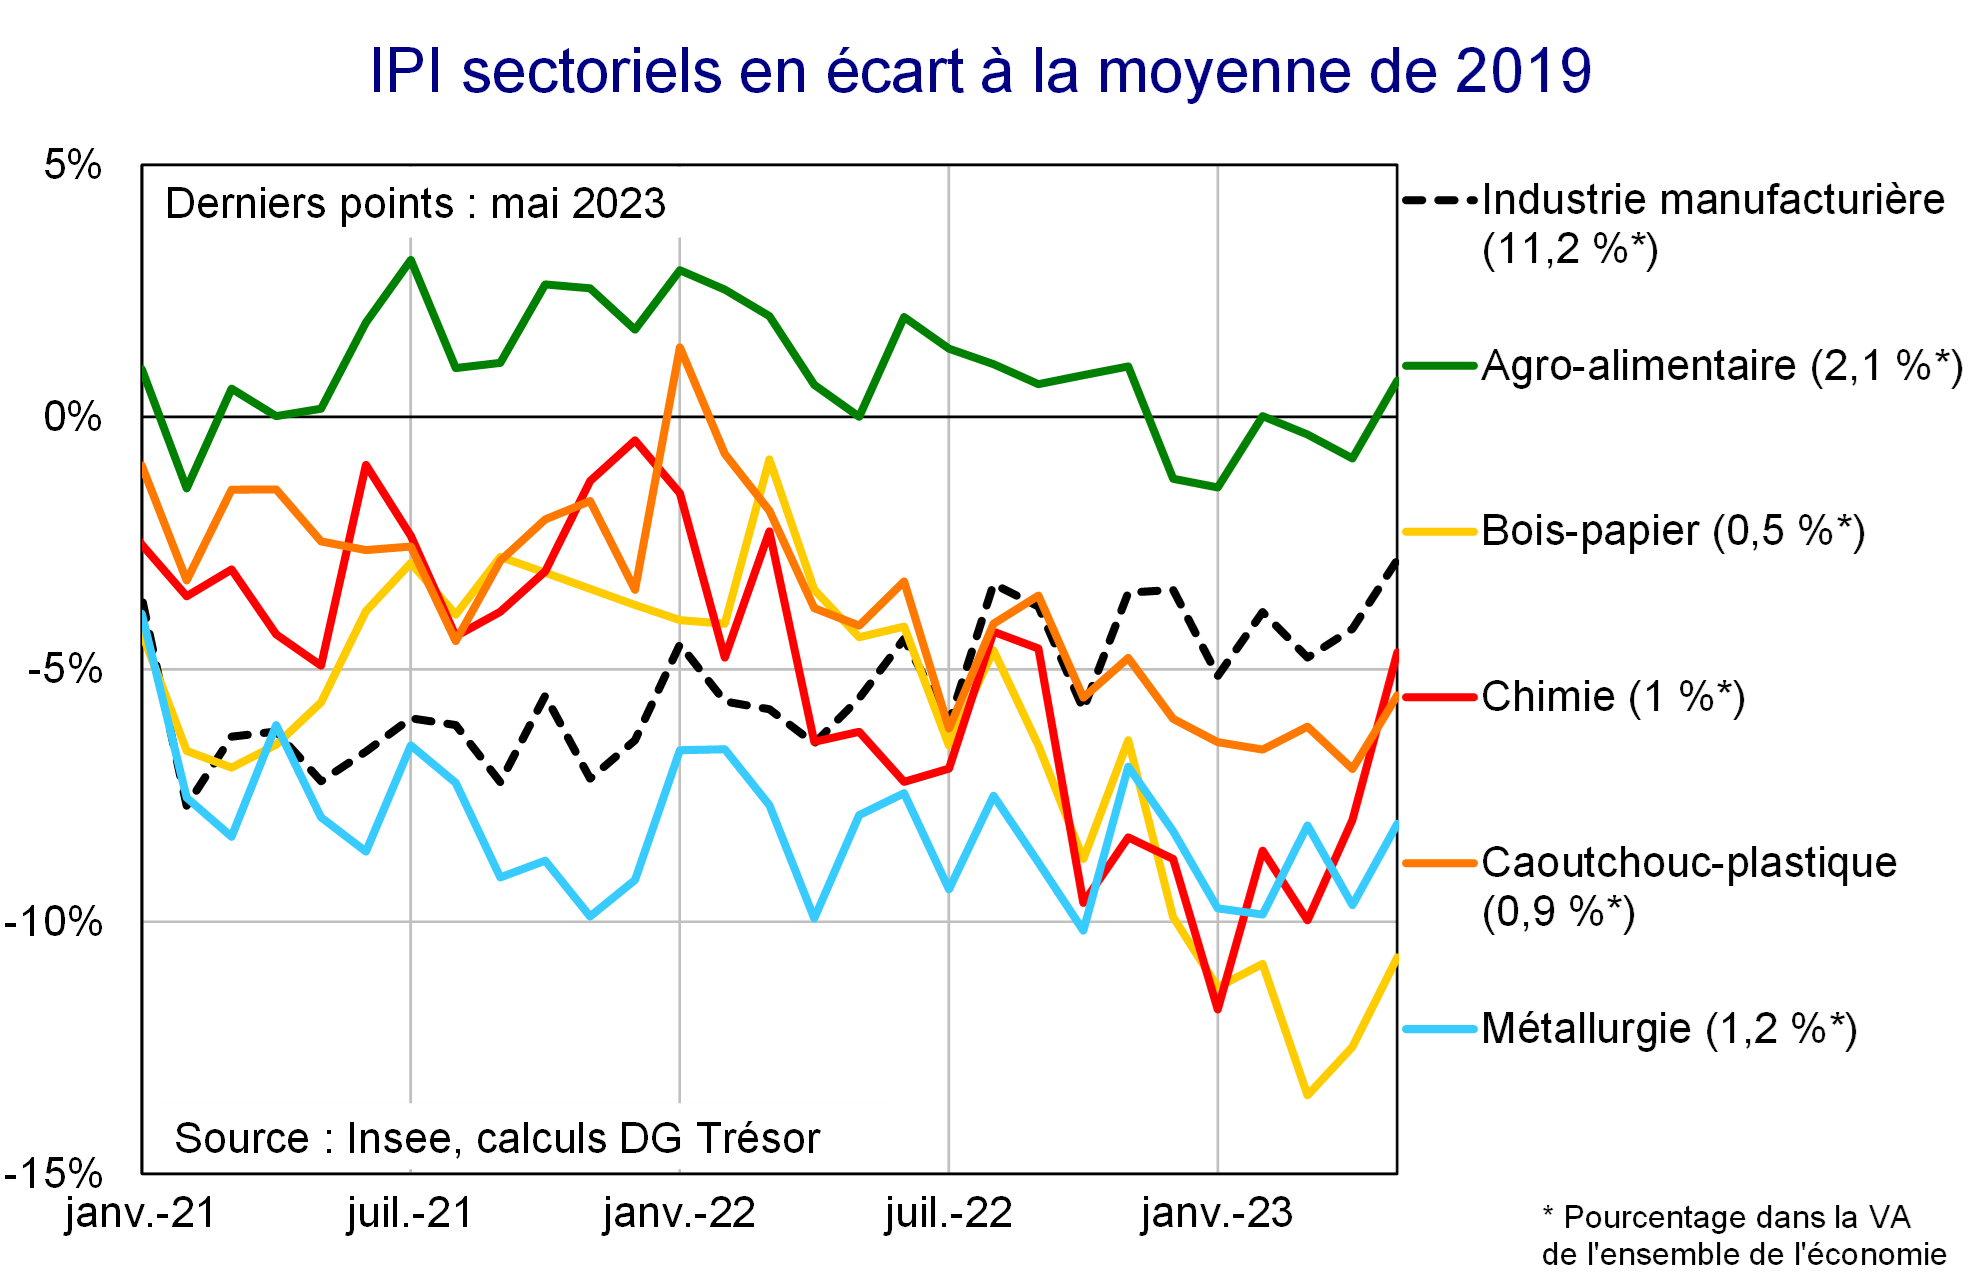 IPI sectoriels en écart à la moyenne de 2019